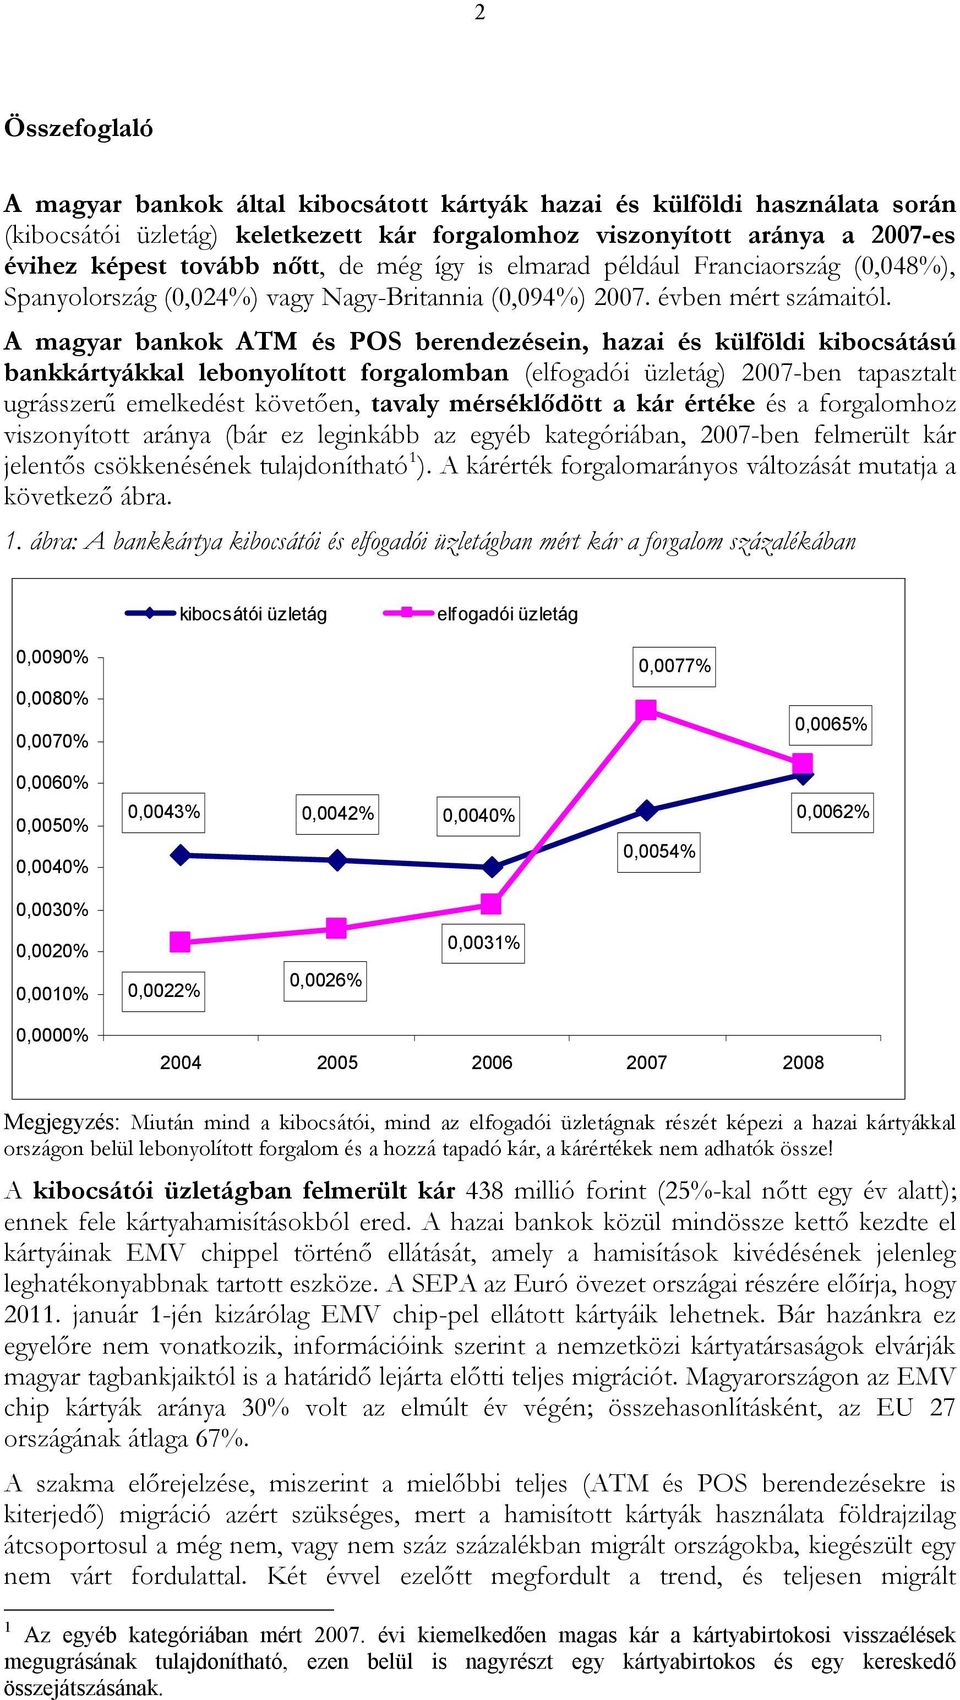 A magyar bankok ATM és POS berendezésein, hazai és külföldi kibocsátású bankkártyákkal lebonyolított forgalomban (elfogadói üzletág) 2007-ben tapasztalt ugrásszerű emelkedést követően, tavaly